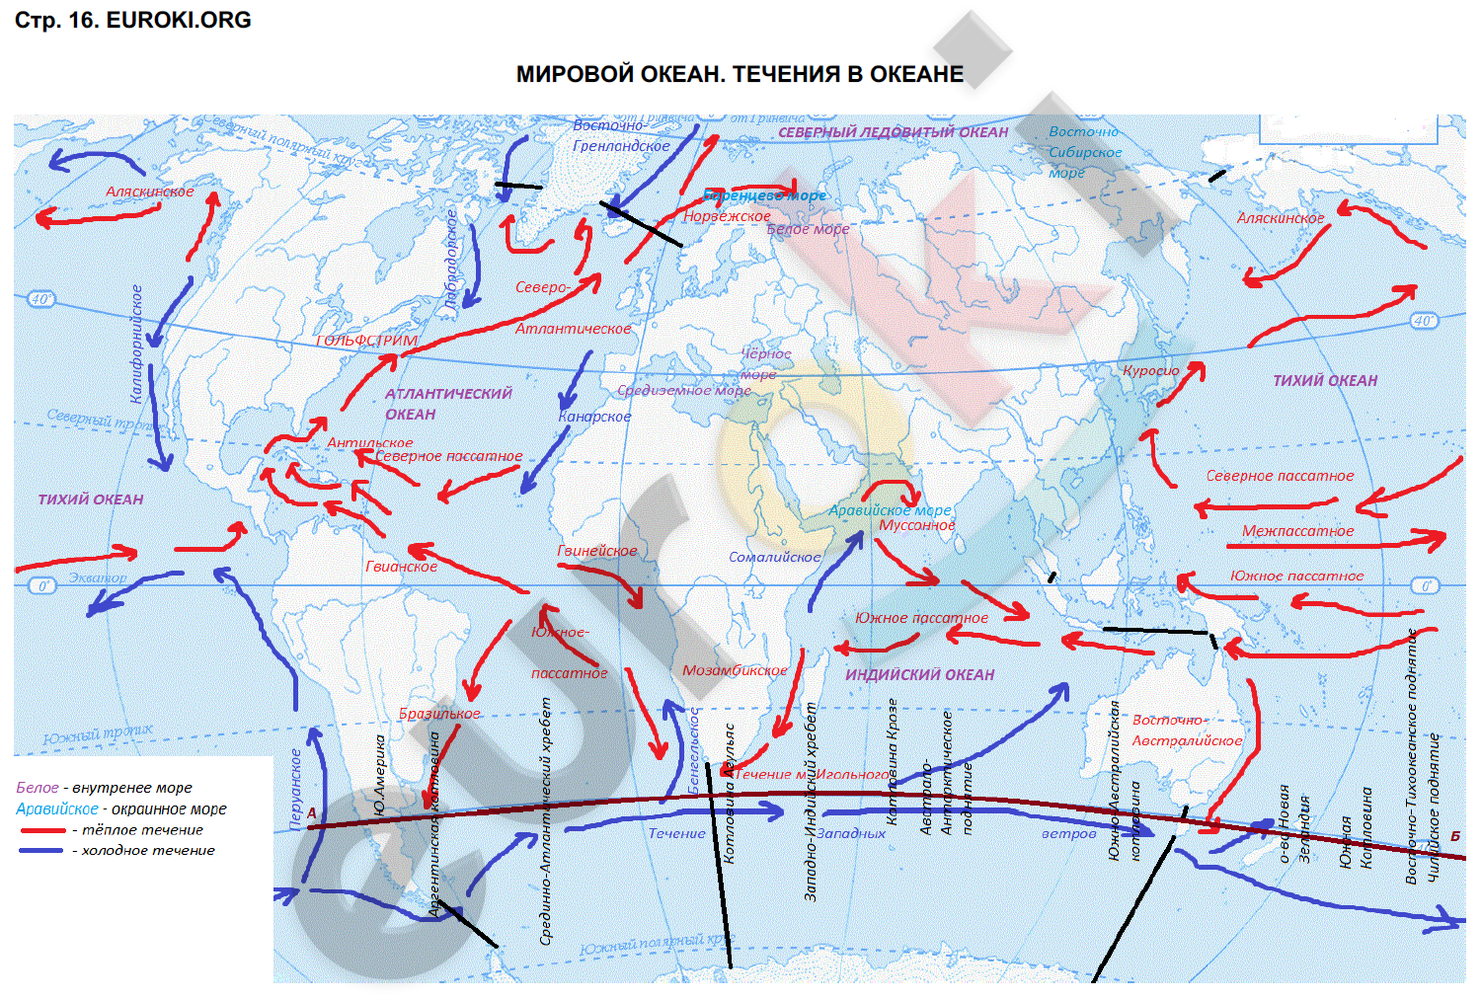 Направление течения воды рыбы определяют. Гдз по географии 6 класс контурные карты мировой океан. Гдз по географии 6 класс контурные карты Дрофа стр 16-17. Гдз по географии 6 класс контурные карты Дрофа стр 16-17 мировой океан. Течения мирового океана 6 класс география контурная карта.